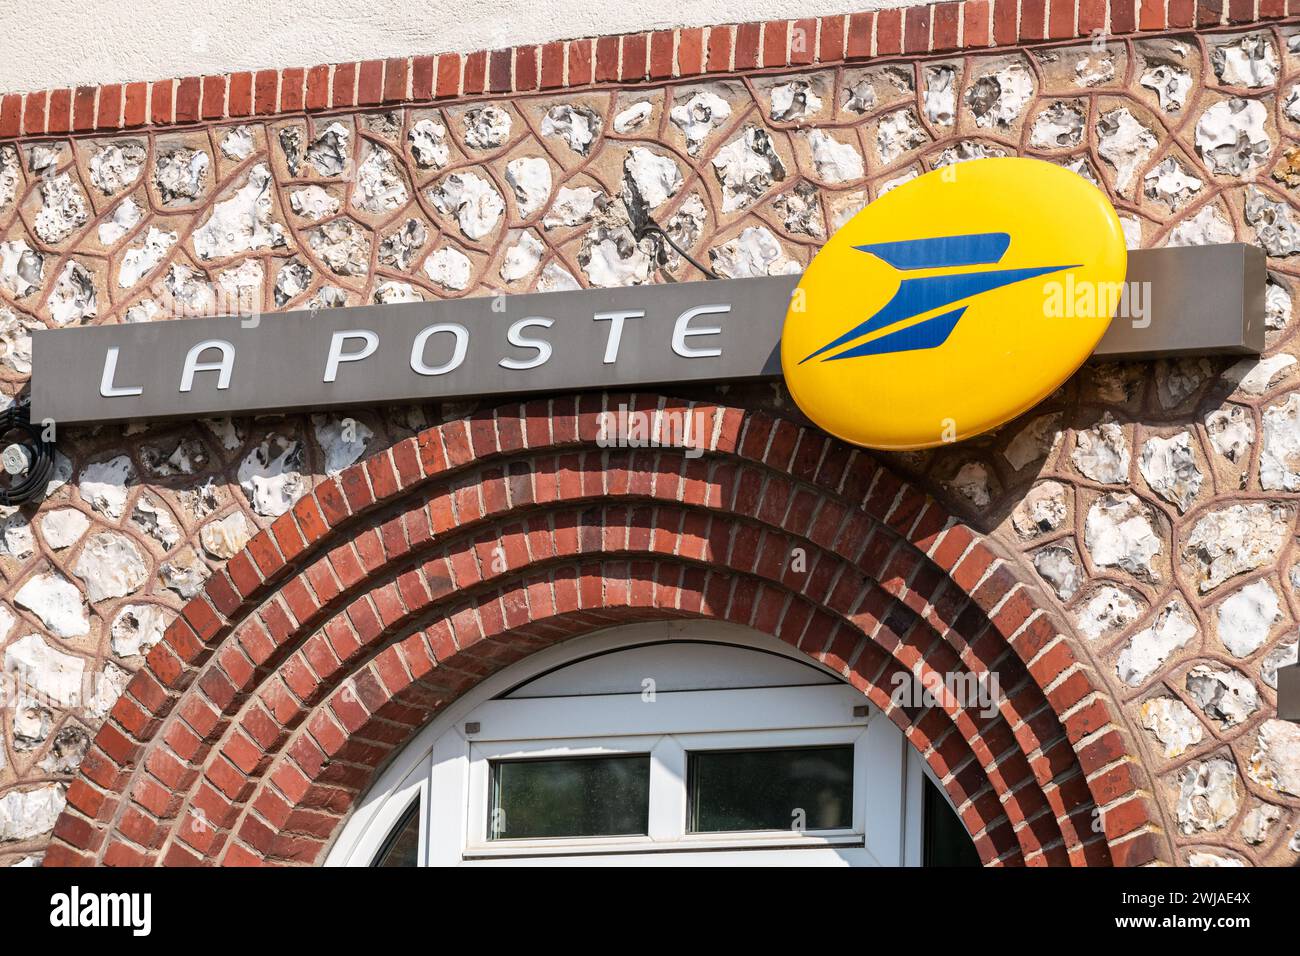 Bureau de poste en zone rurale : bureau de poste et boîte aux lettres jaune à Saint-Pierre-de-Varengeville (Nord de la France) Banque D'Images